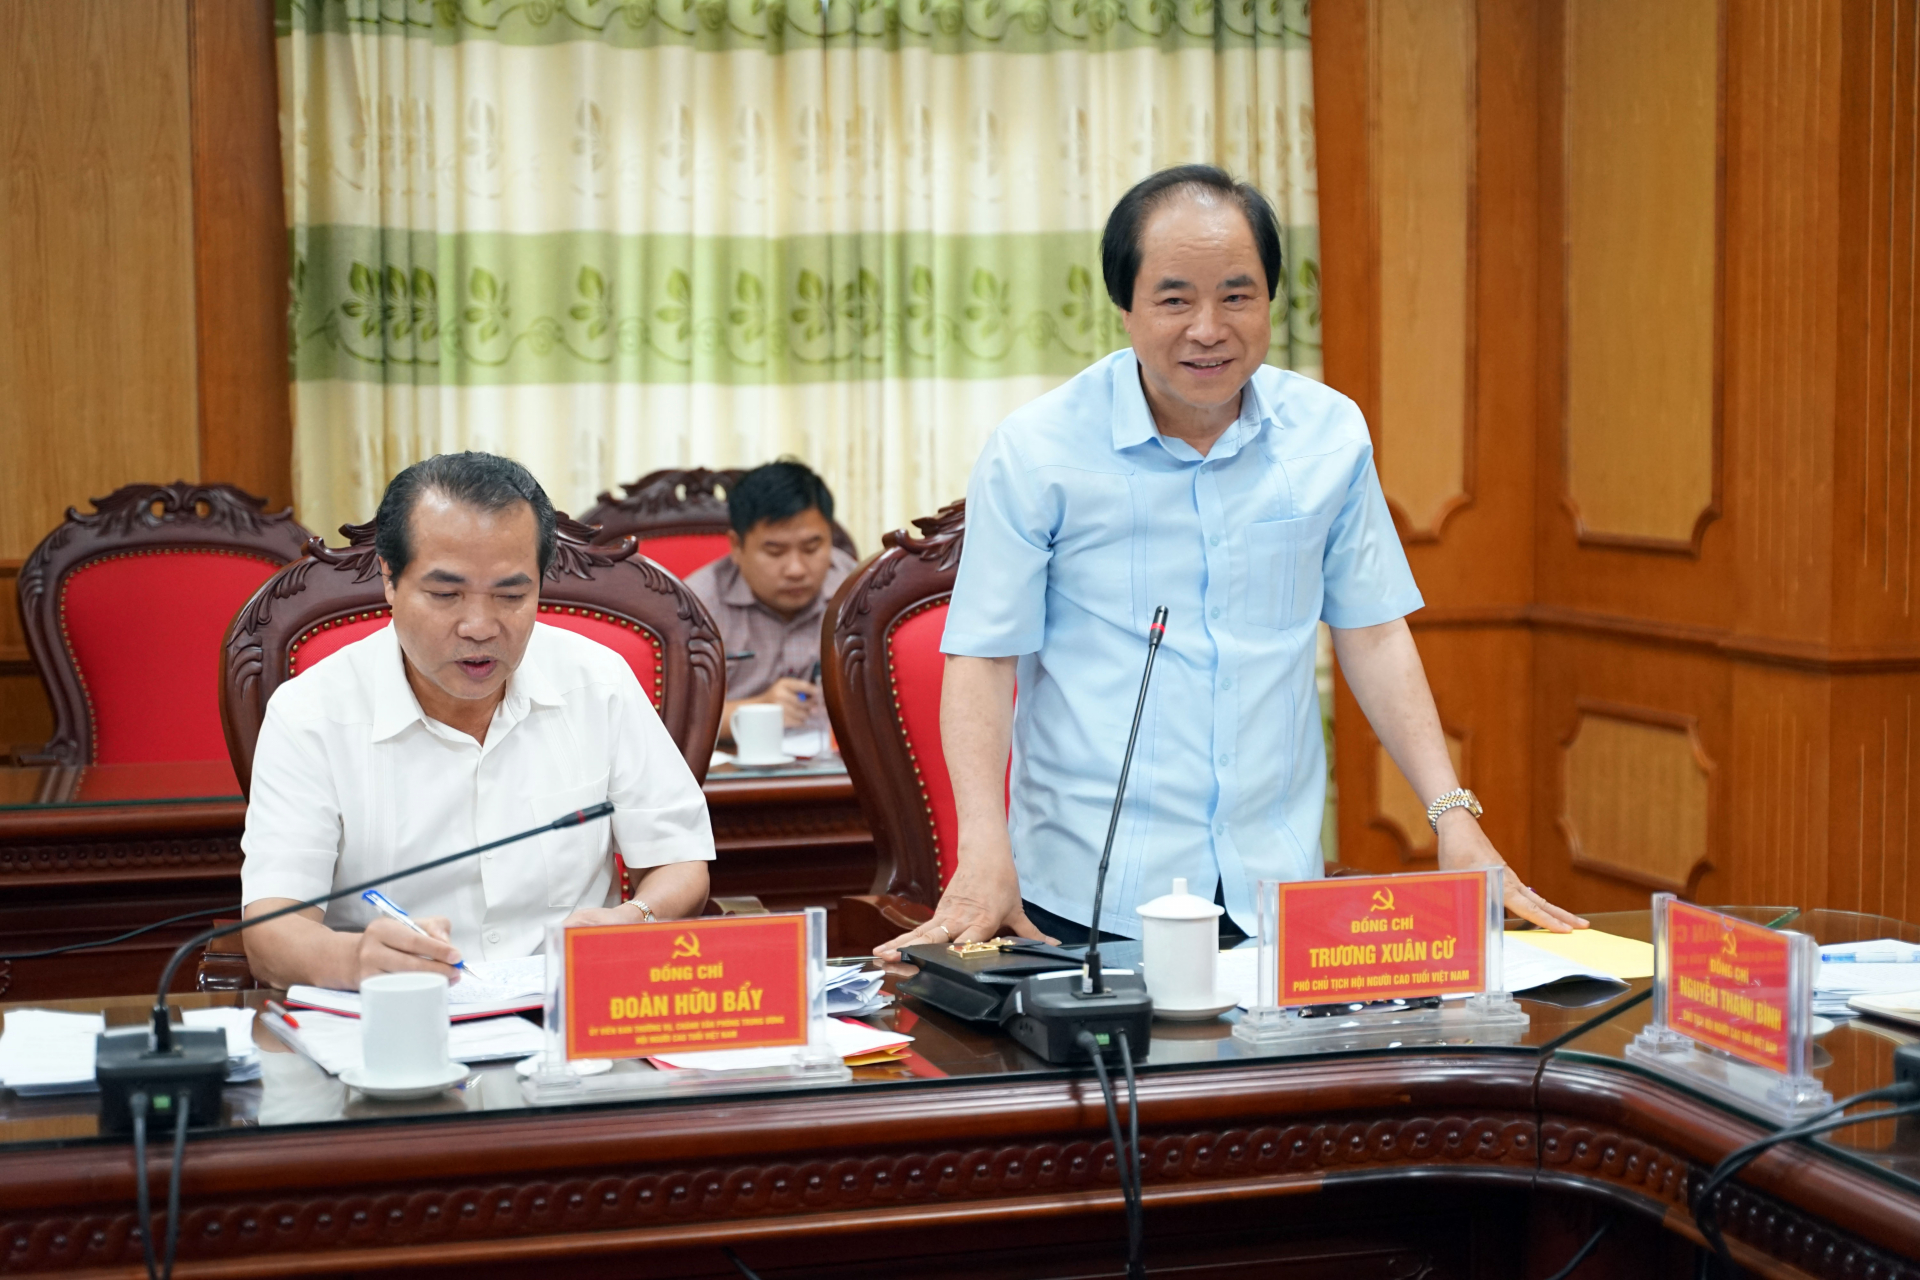 Phó Chủ tịch Hội NCT Việt Nam Trương Xuân Cừ phát biểu tại buổi làm việc.